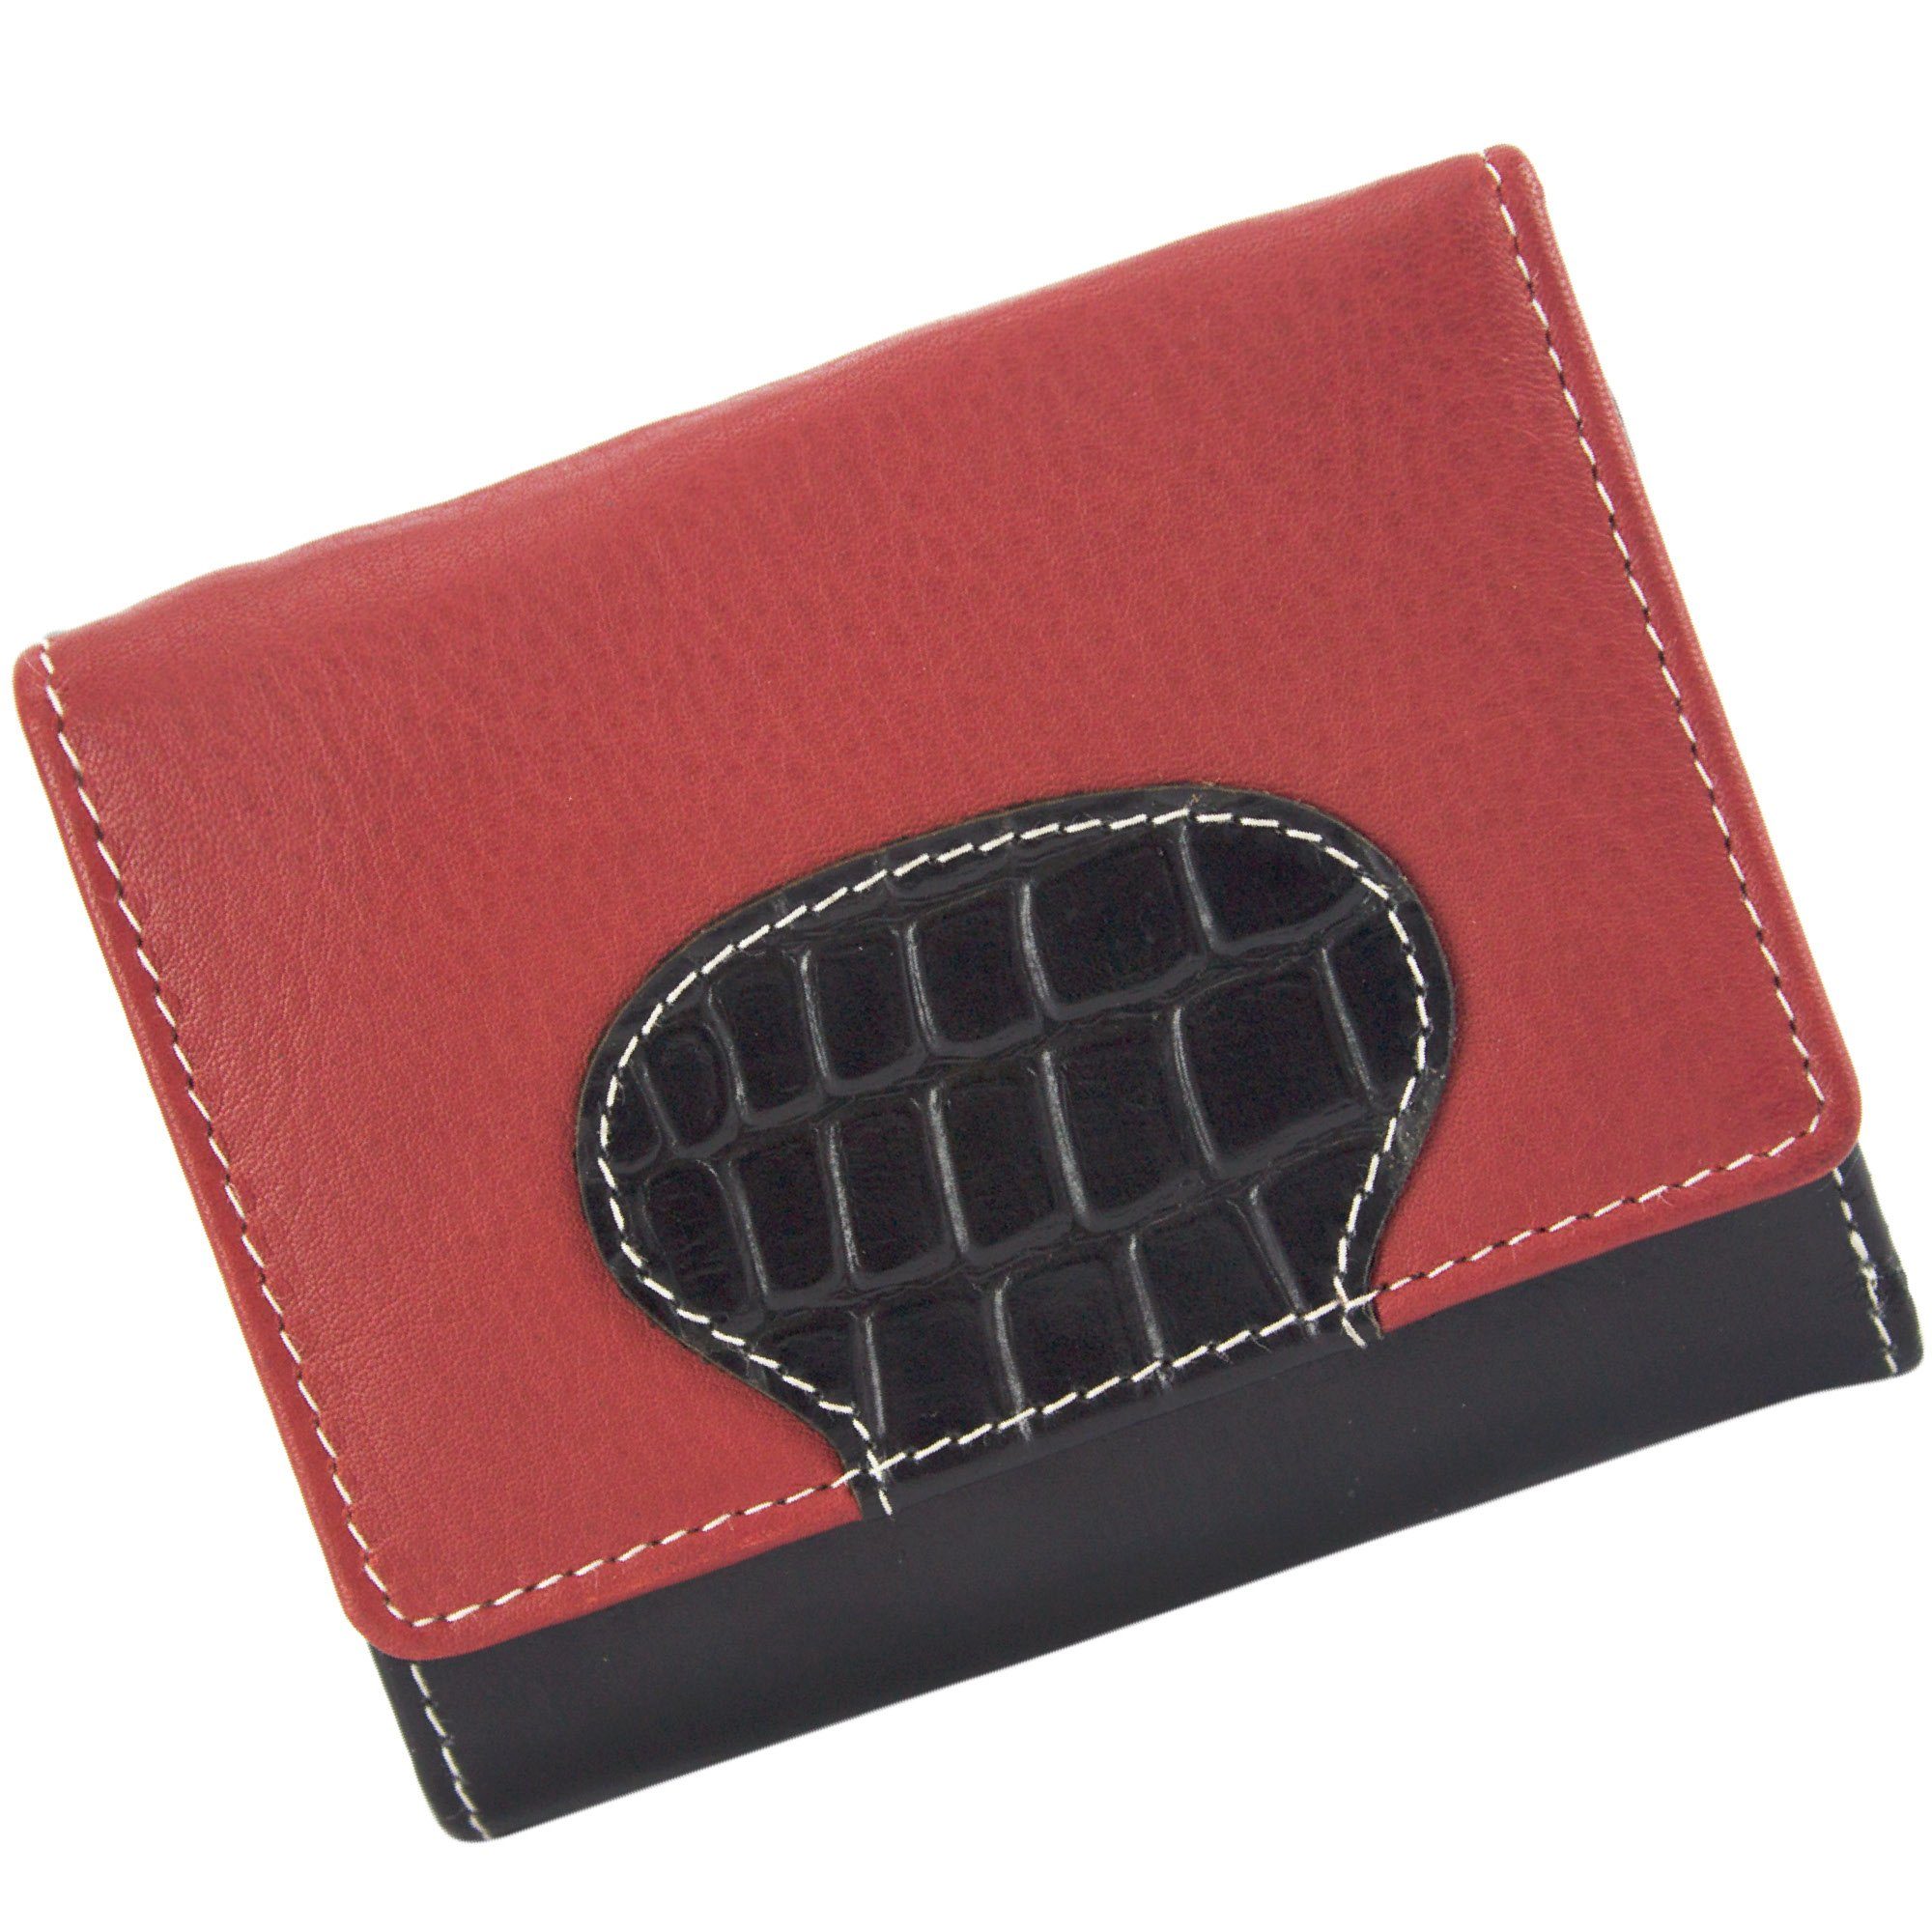 Sunsa Mini Geldbörse echt Leder Geldbörse Damen Geldbeutel Portemonnaie kleine Brieftasche, echt Leder, aus recycelten Lederresten, mit RFID-Schutz, Unisex rot/schwarz